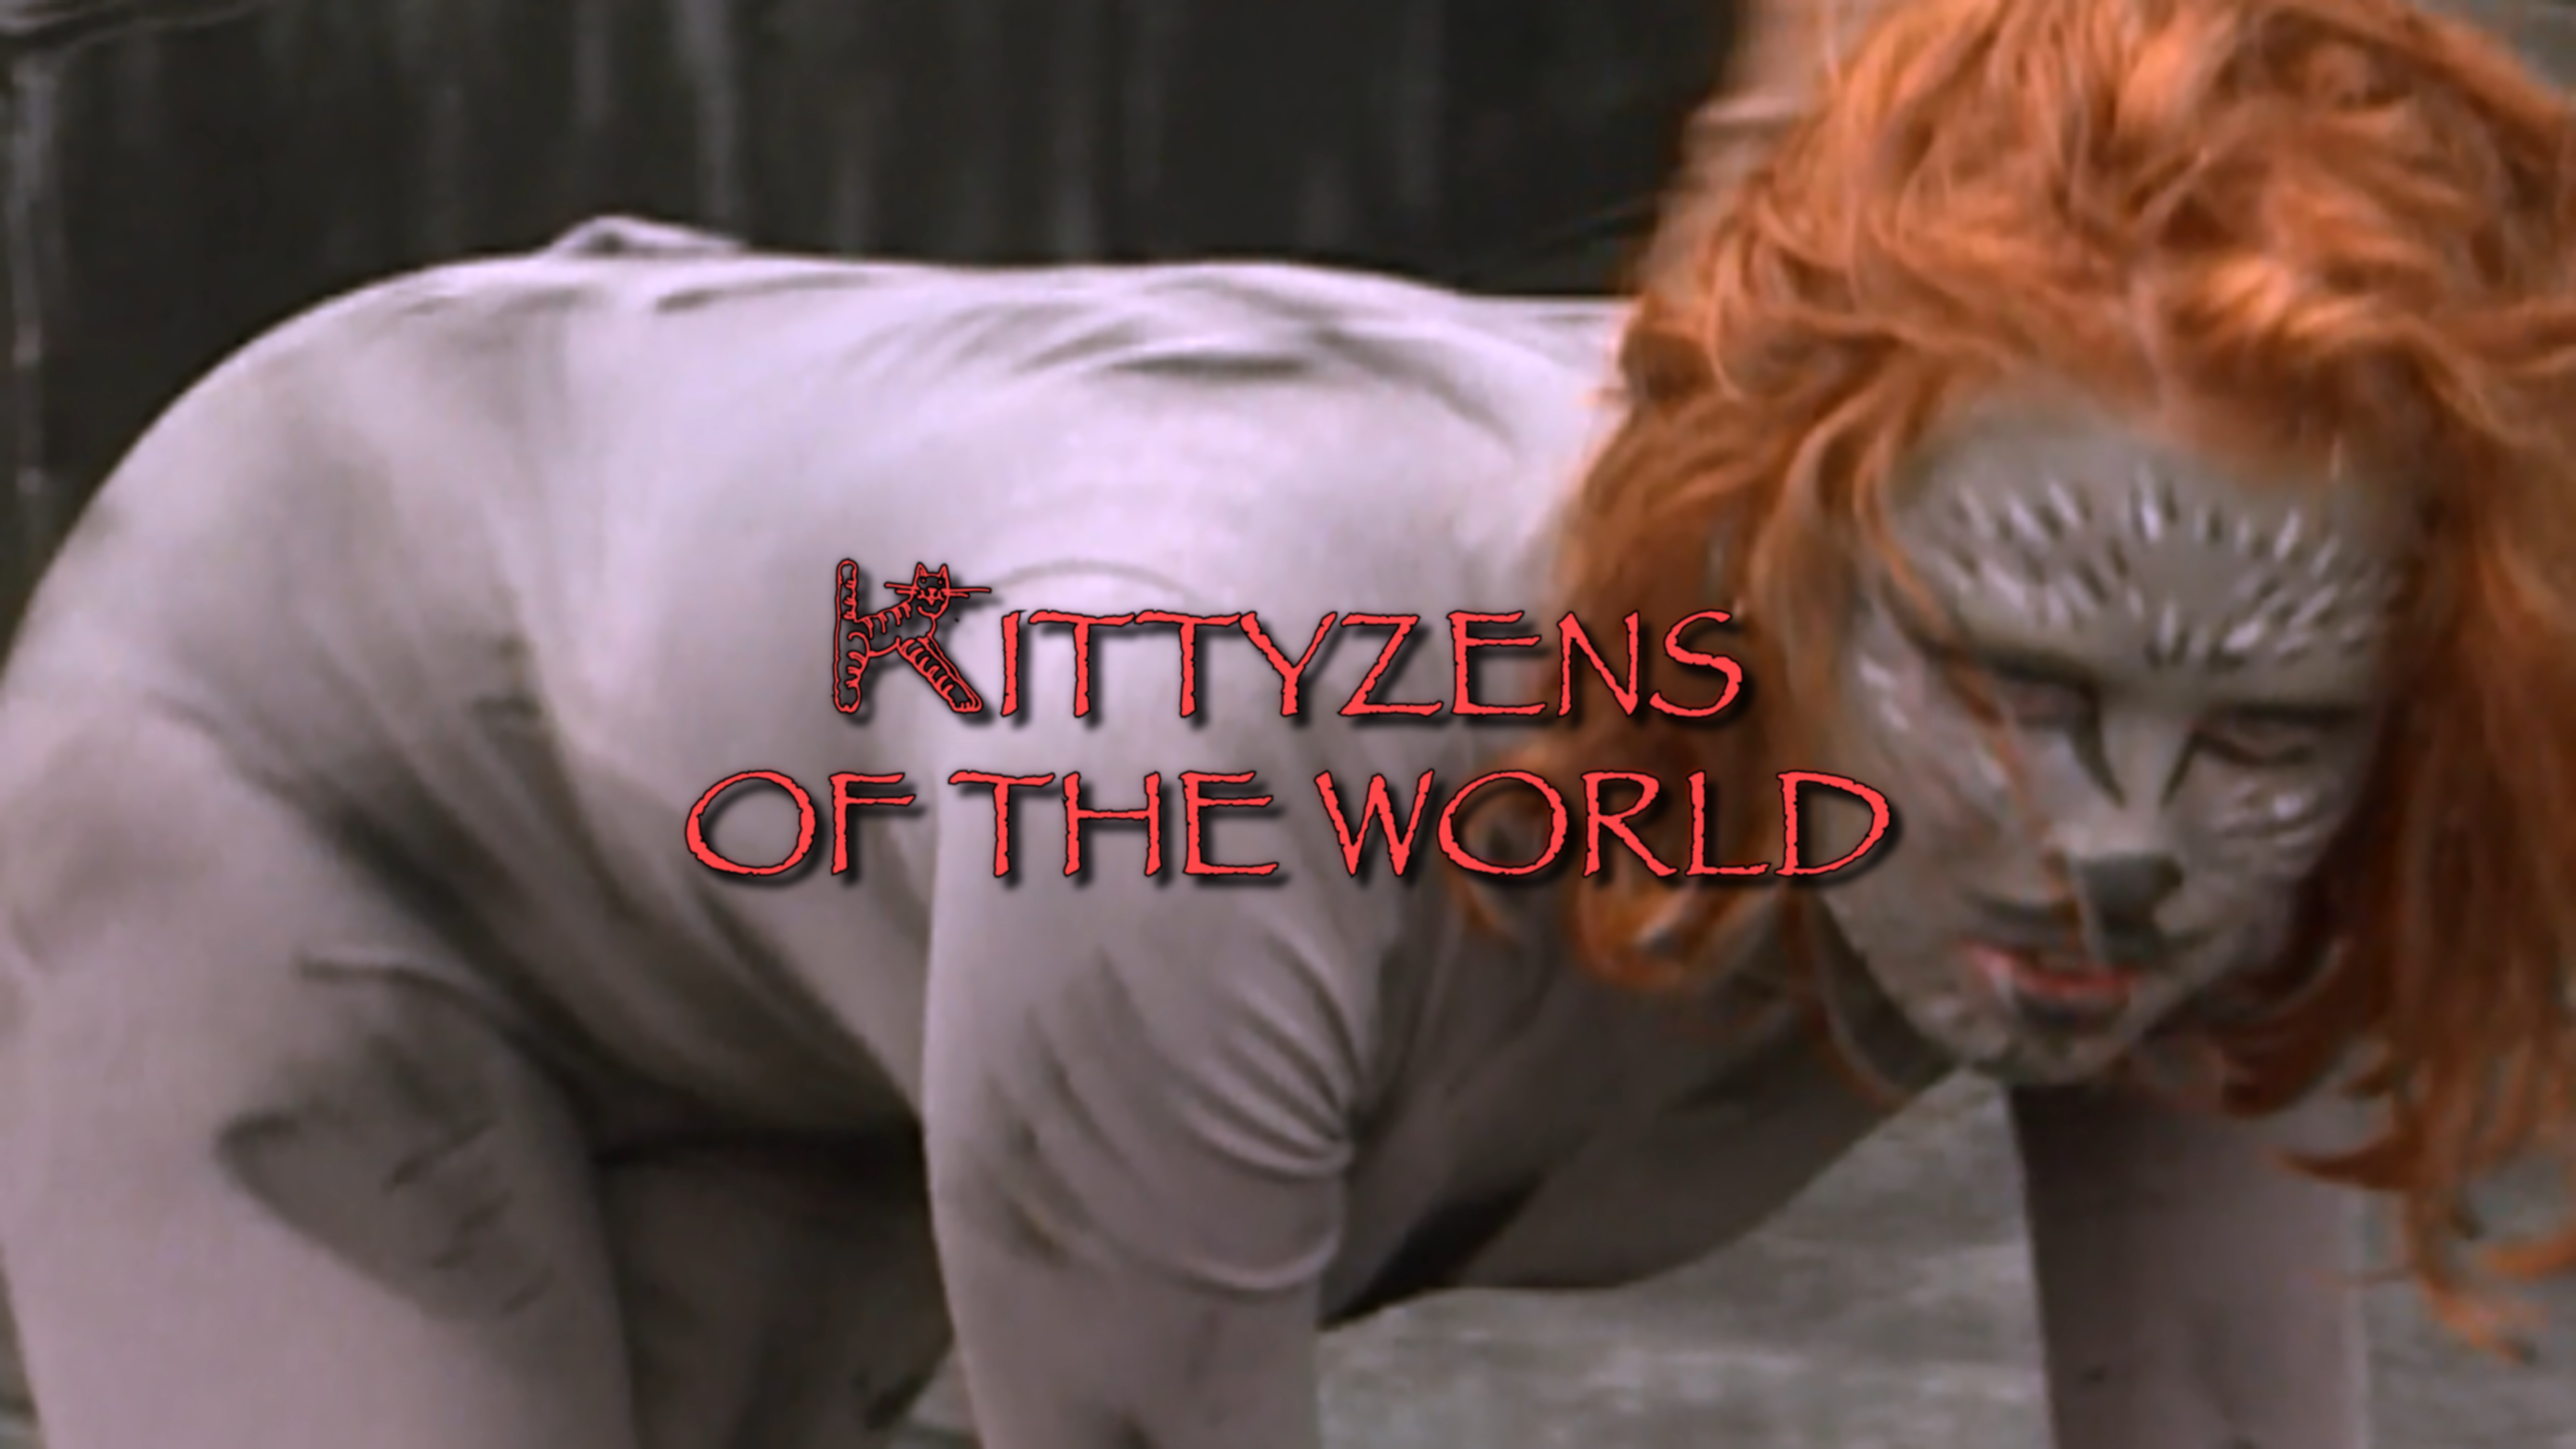 Kittyzens of the World